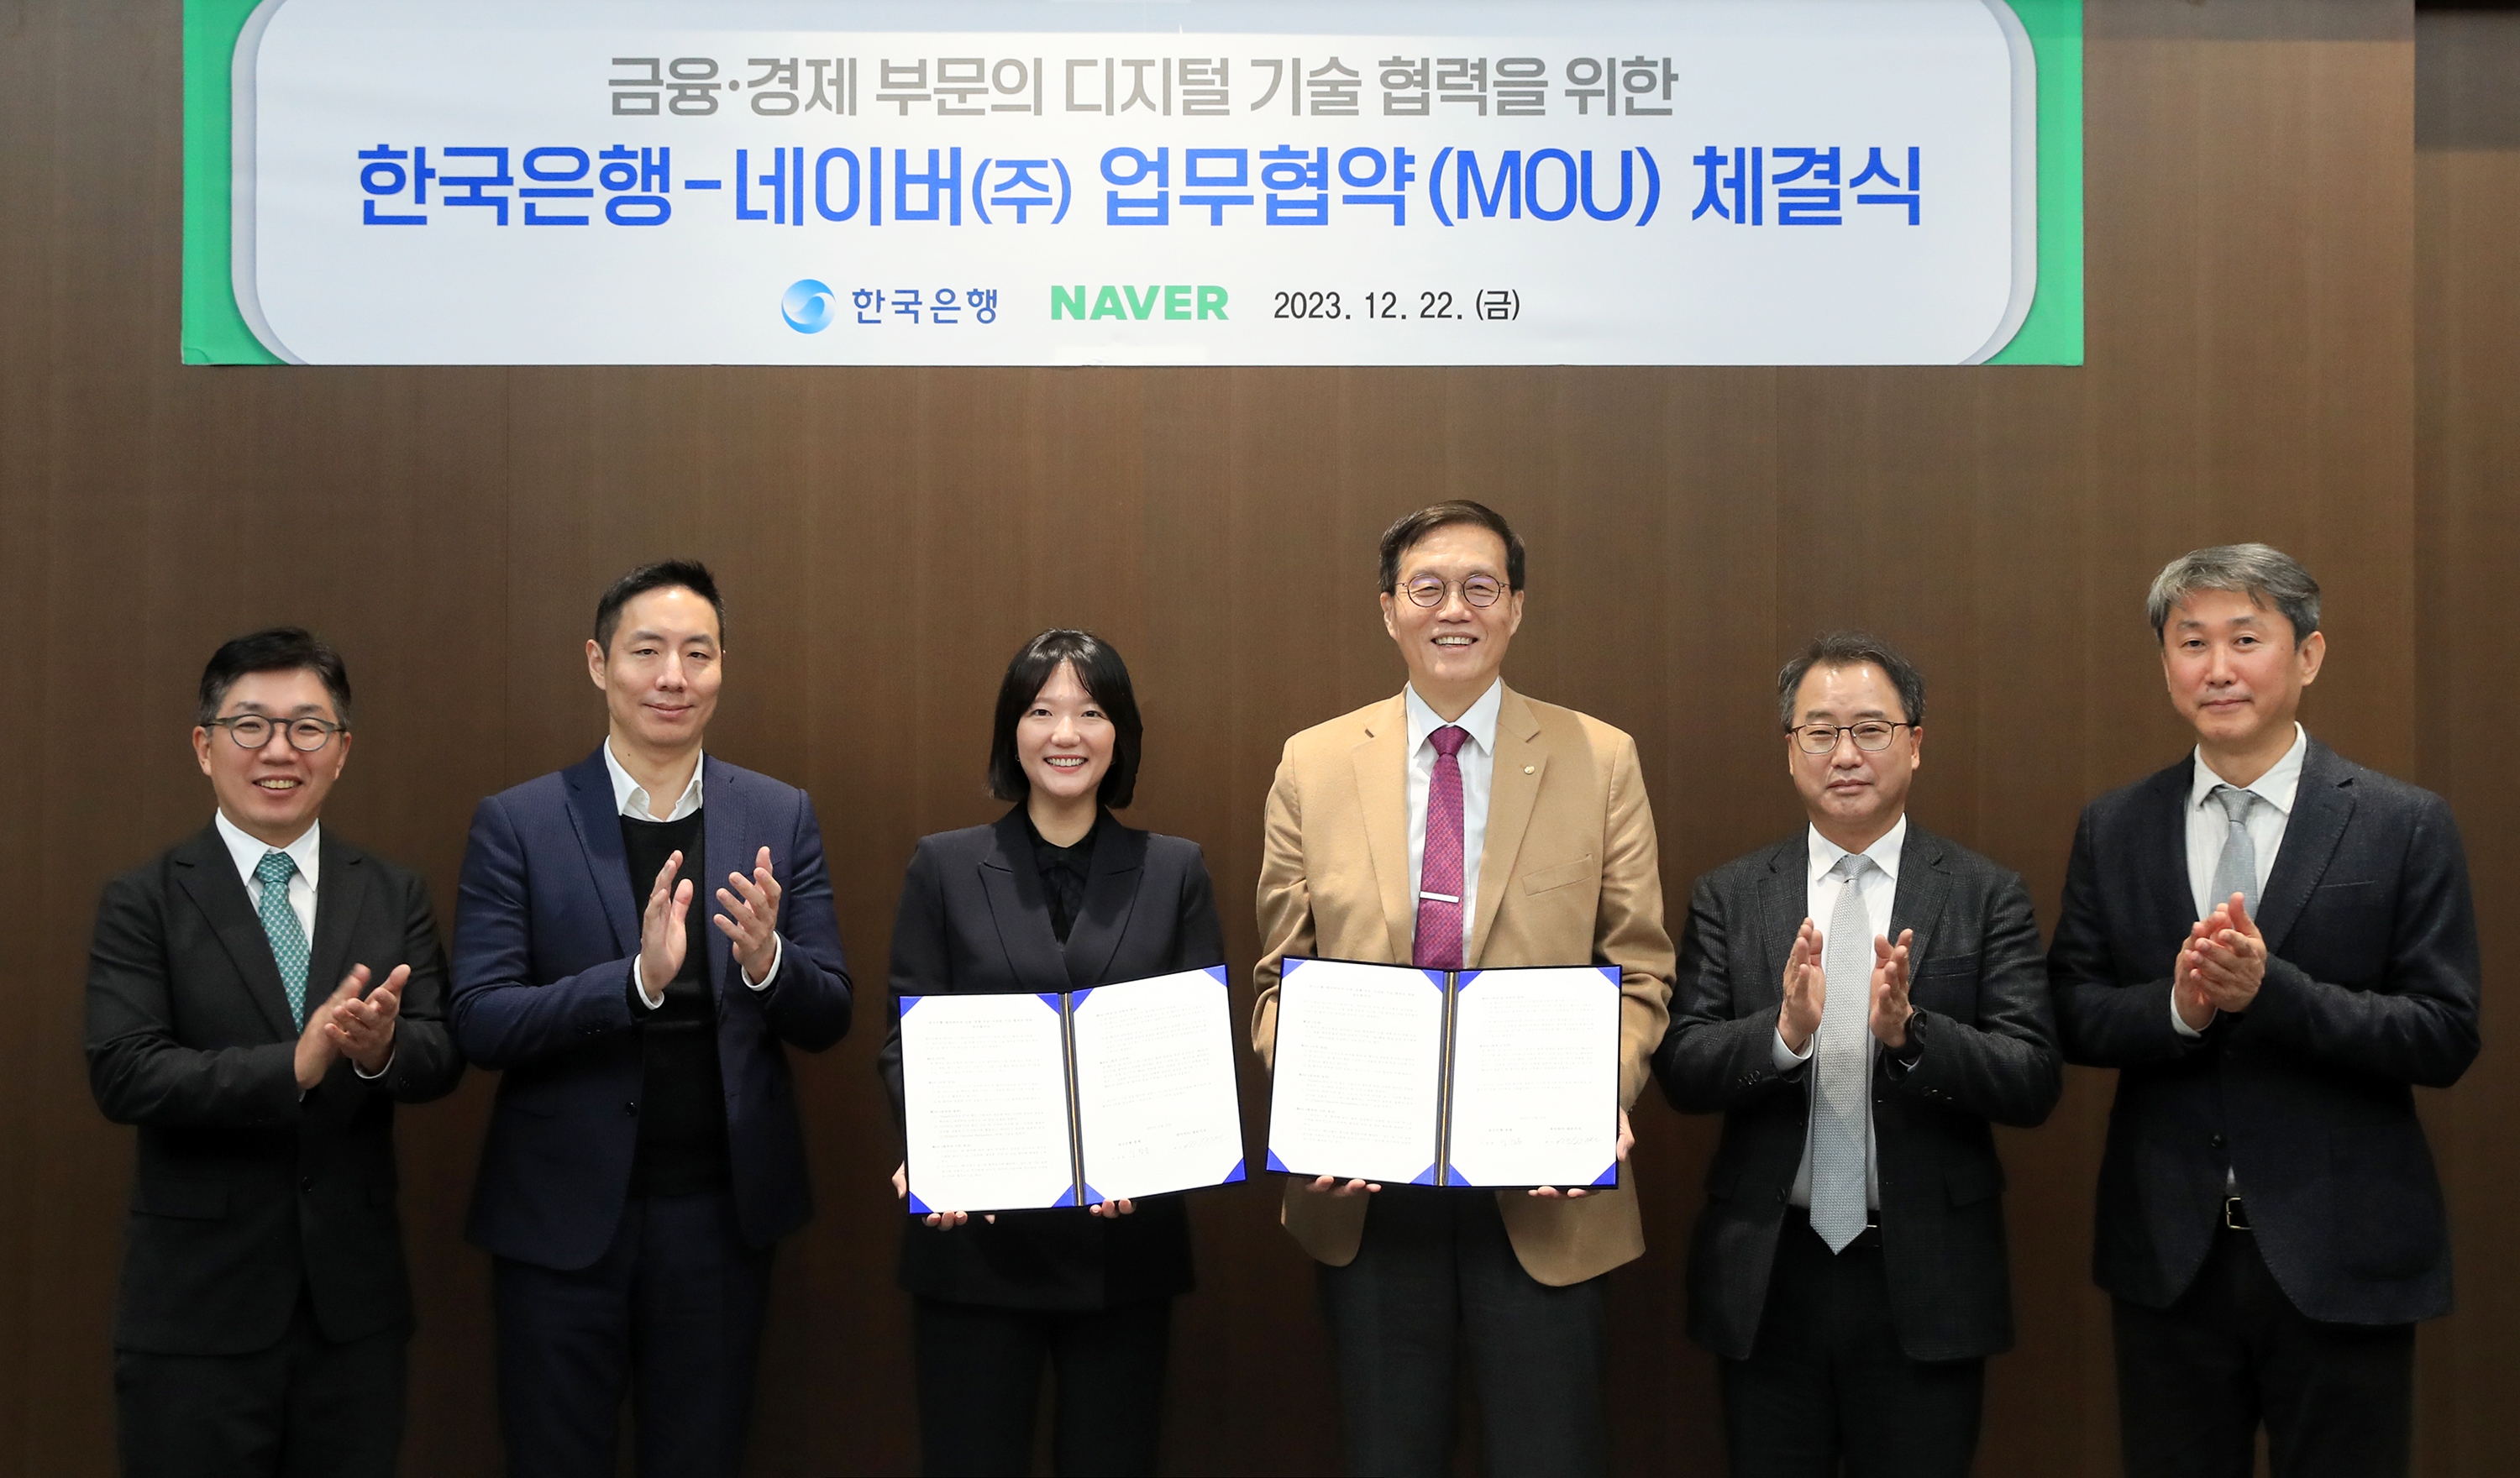 네이버와 한국은행이 금융, 경제 부문의 디지털 기술 협력을 위한 업무 협약을 체결했다. (왼쪽부터) 김유원 네이버클라우드 대표, 김남선 네이버 CFO, 최수연 네이버 대표. / 사진제공=네이버